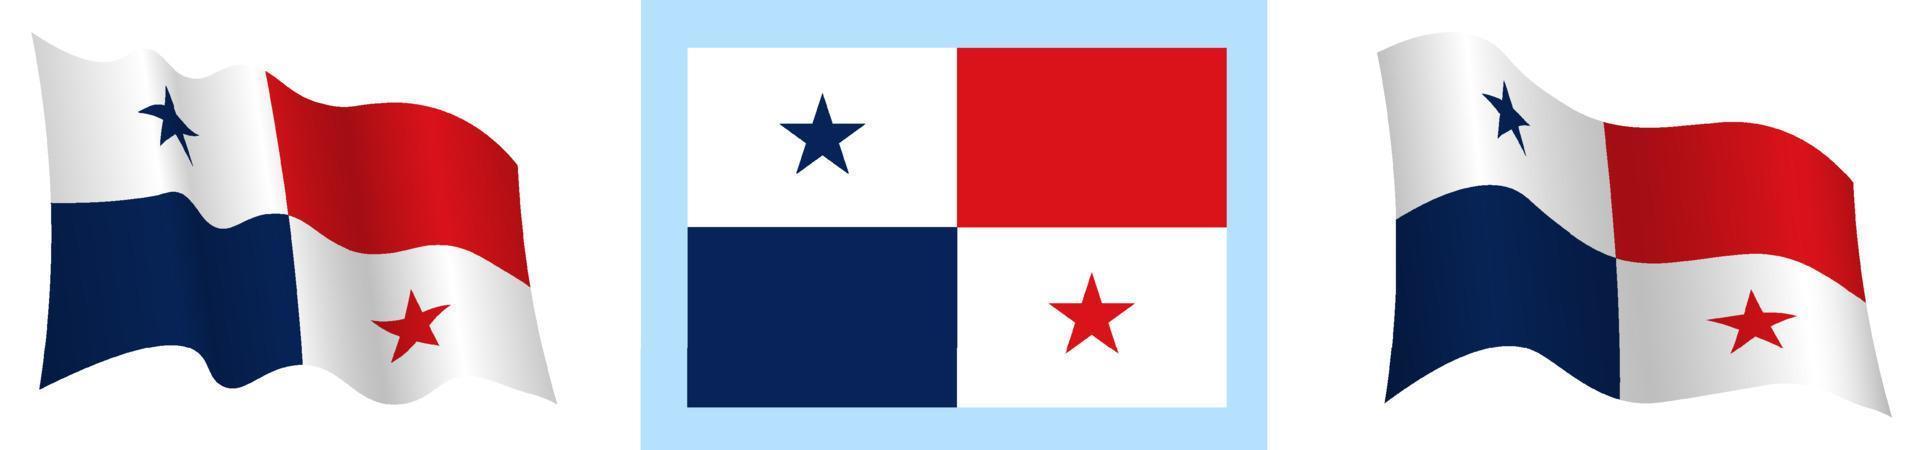 bandeira da república do panamá em posição estática e em movimento, tremulando ao vento em cores e tamanhos exatos, sobre fundo branco vetor